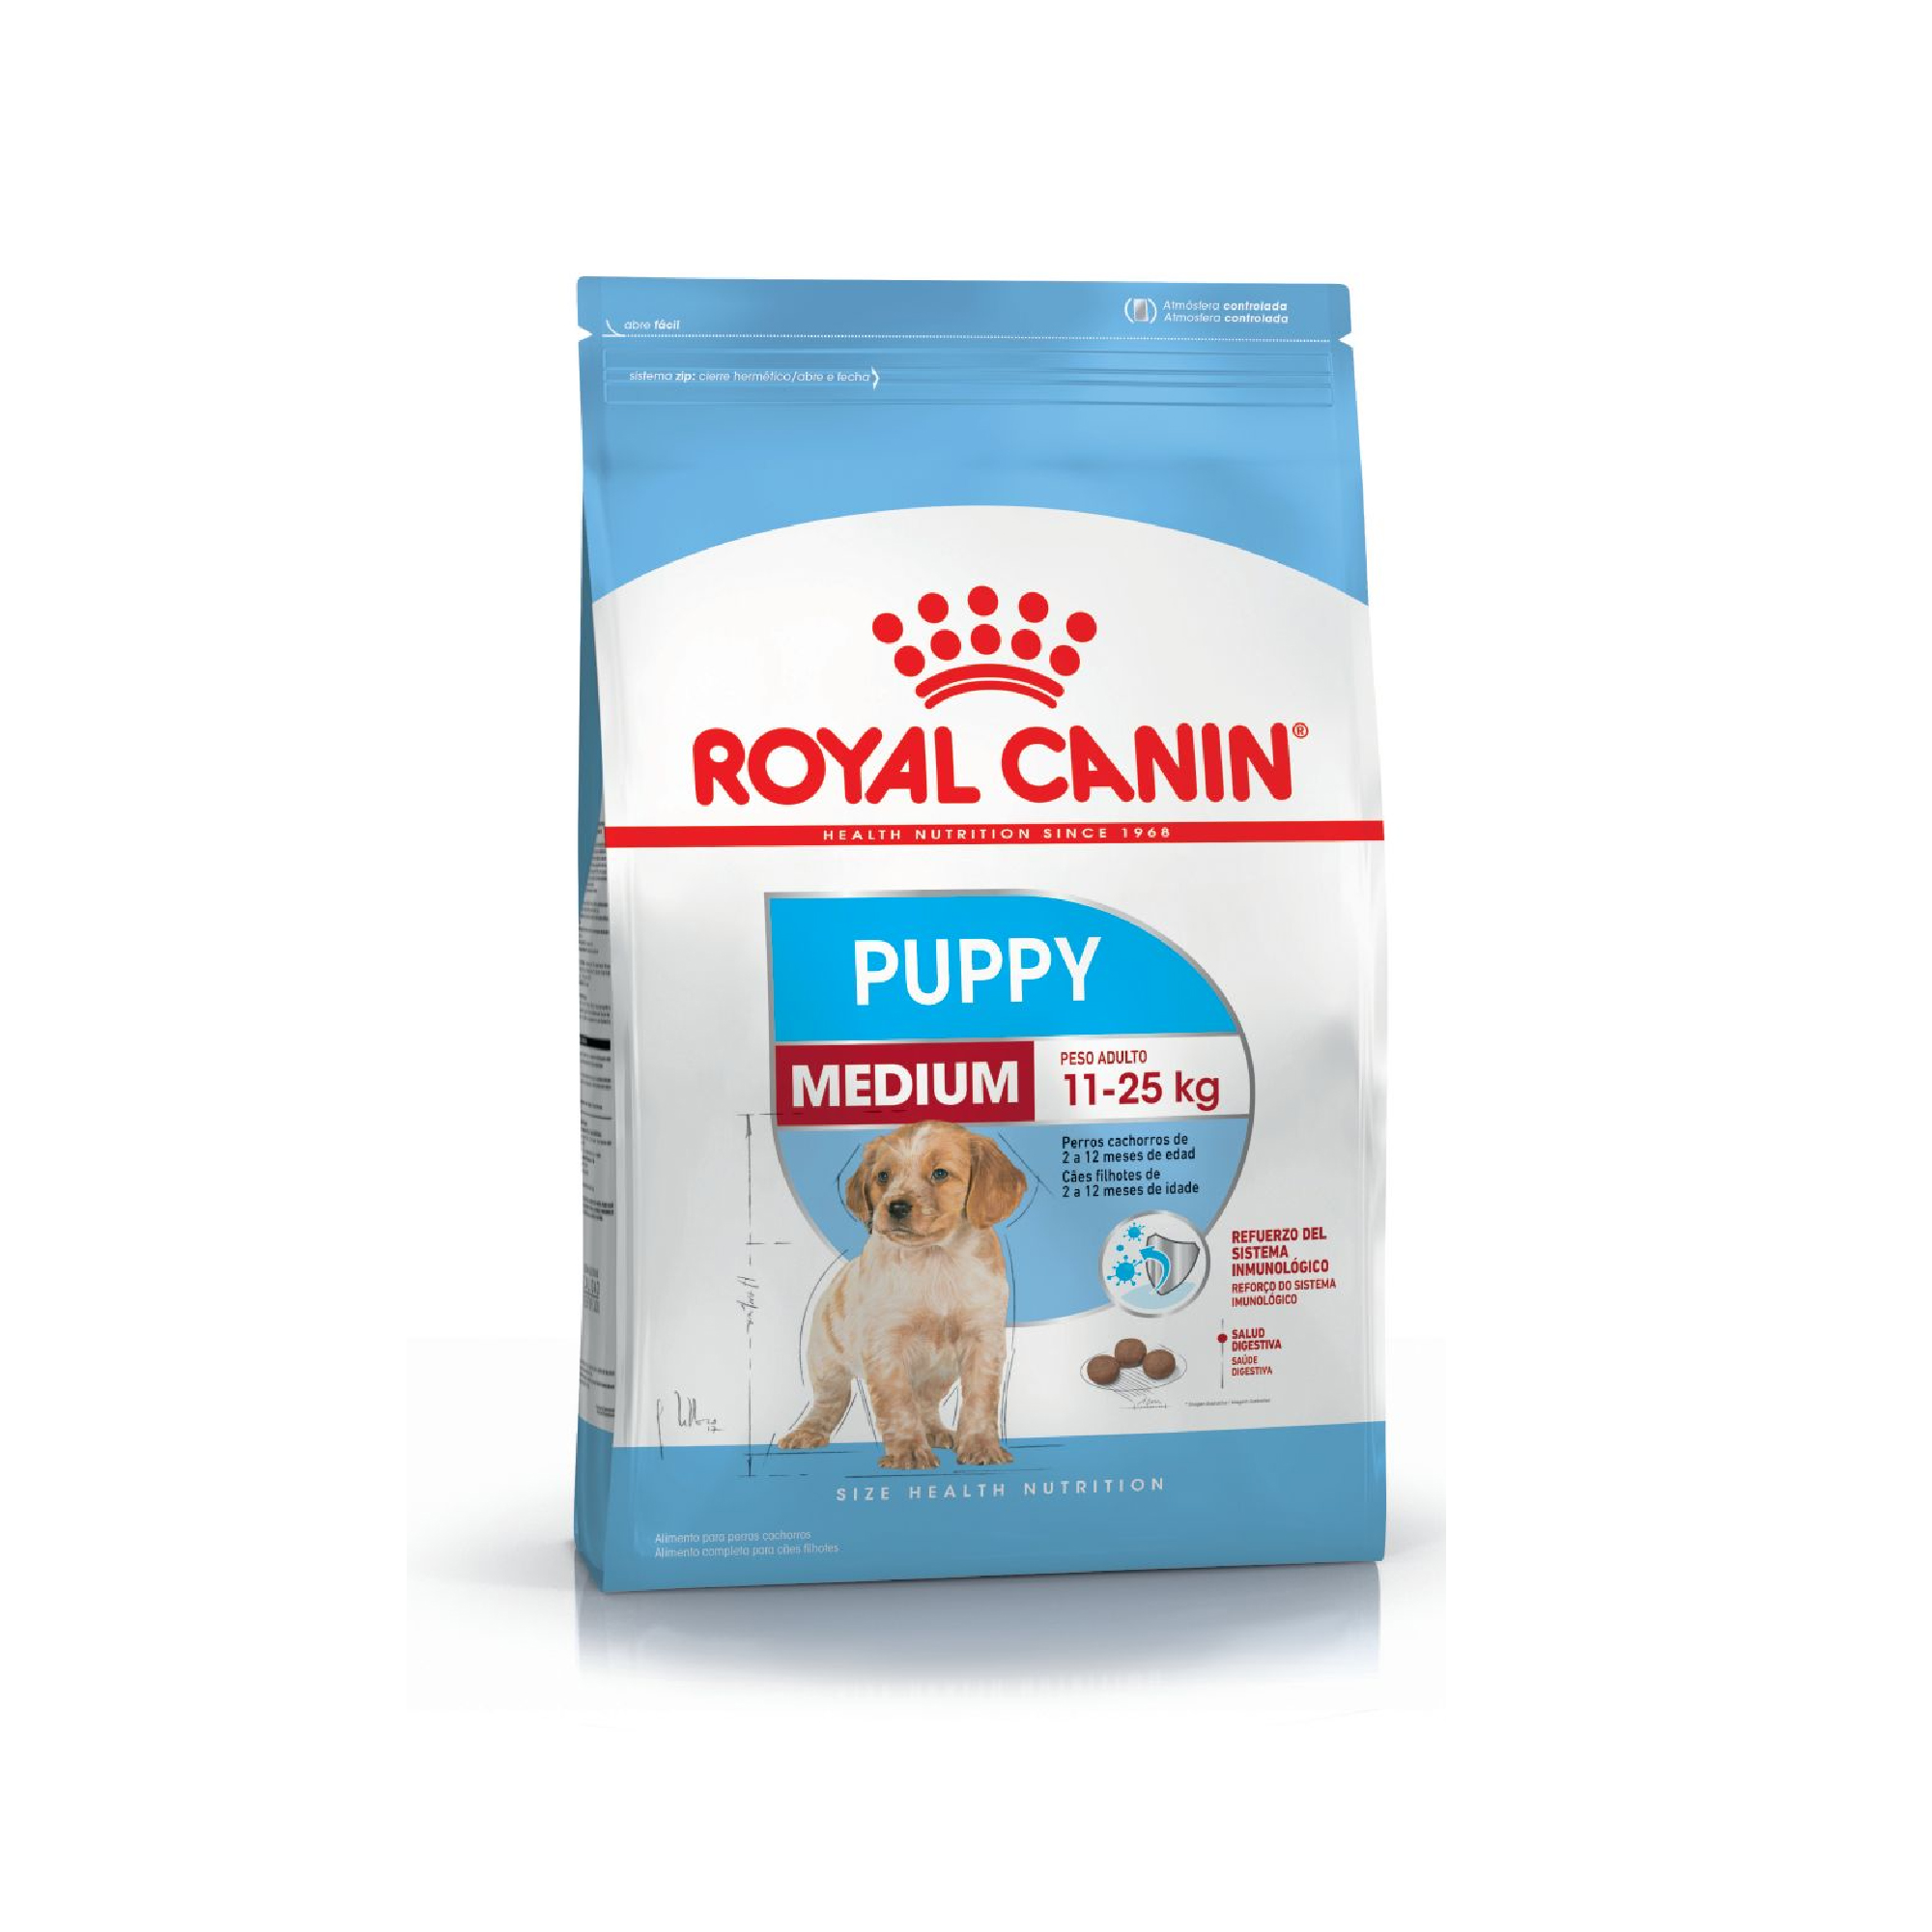 biblioteca pulgada confiar Royal Canin Medium Puppy - Insagro - La mejor variedad, calidad y precios  en Jardinería y Veterinaria. Compra ahora en línea de forma segura y fácil.